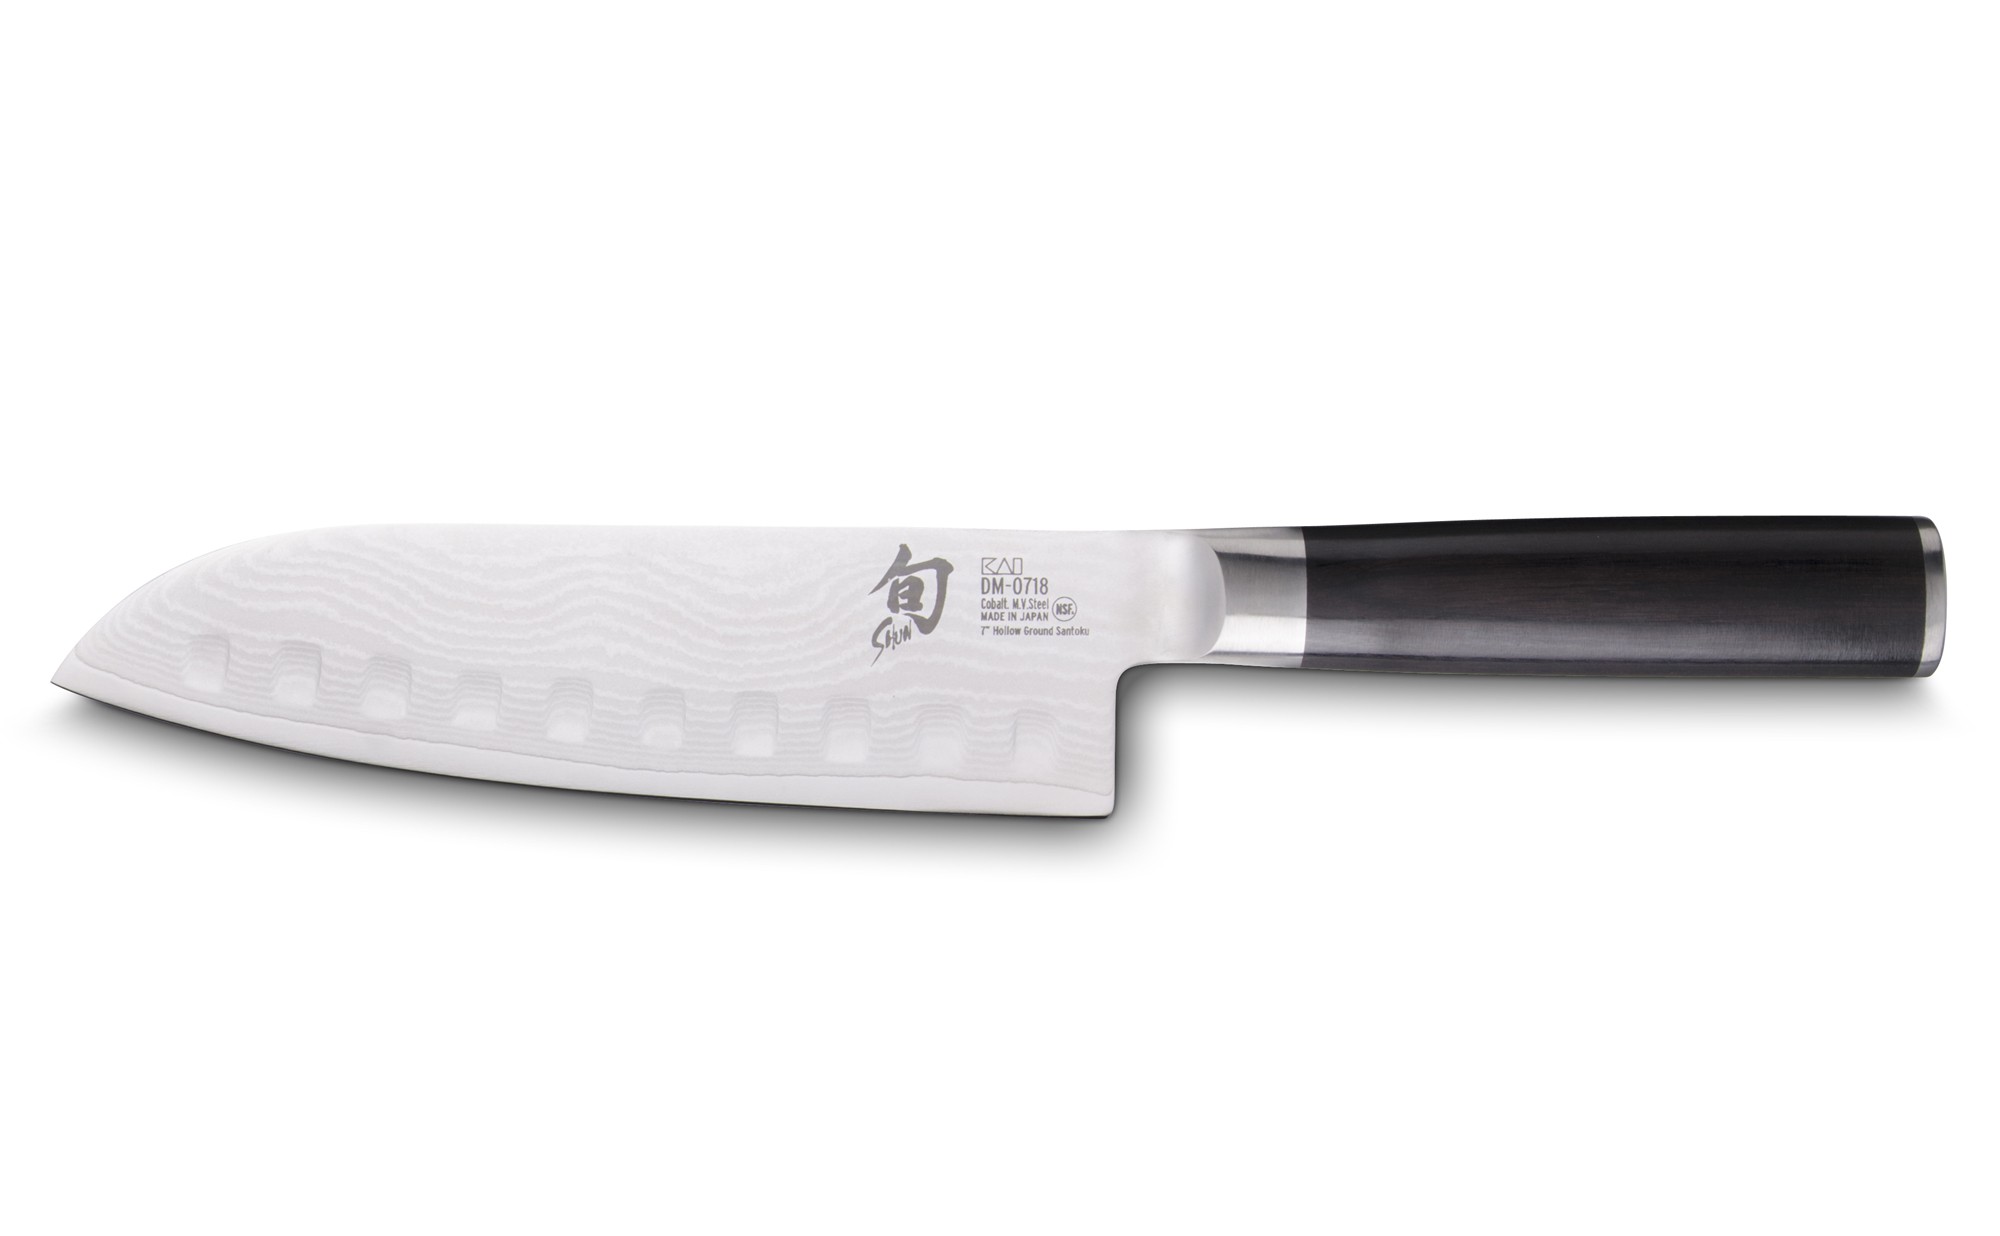 Couteau Santoku alvéolé Global 18 cm - Colichef